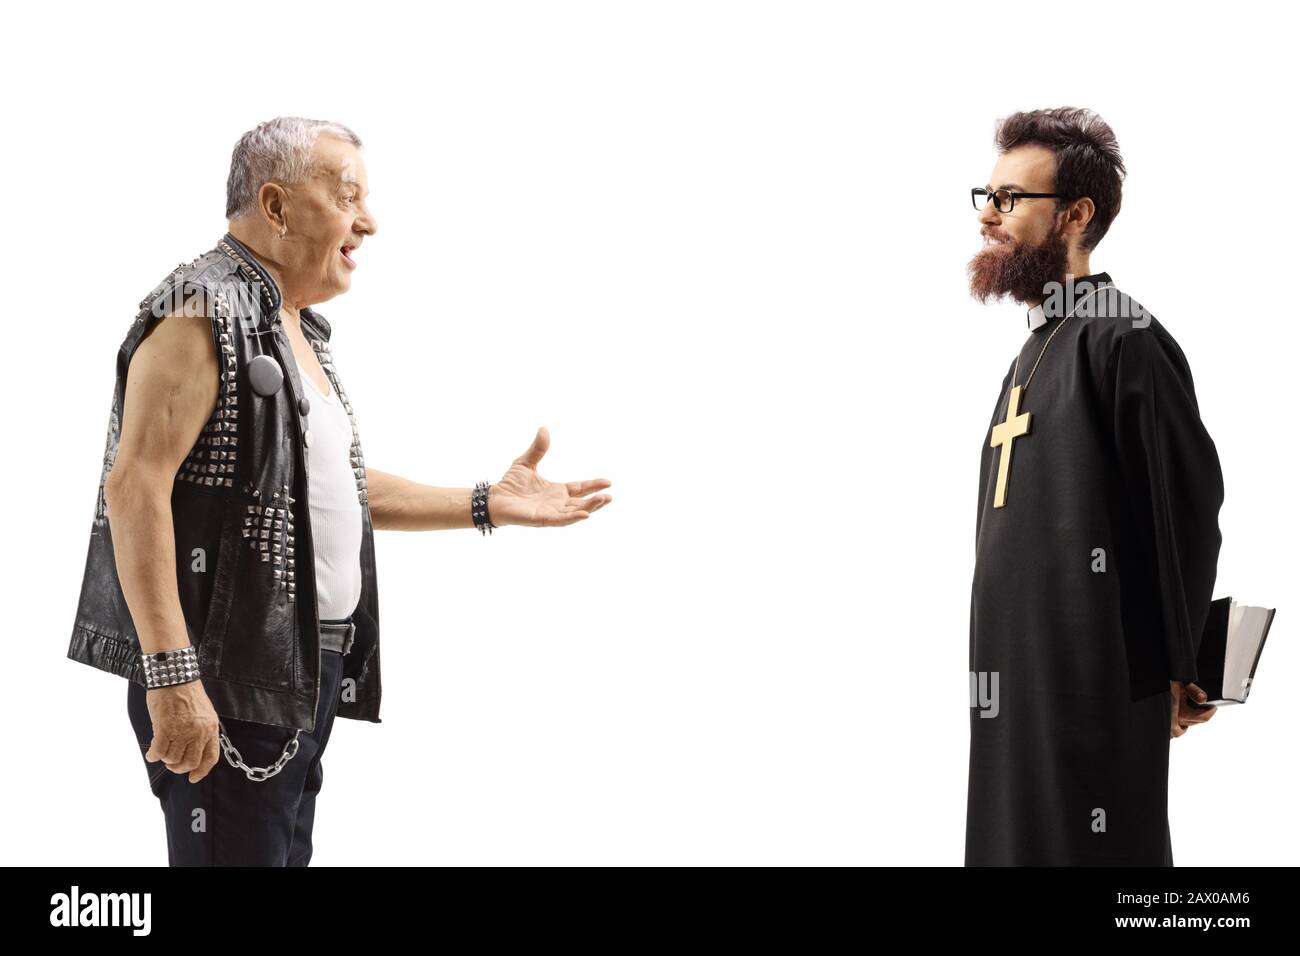 Reifer Punk im Gespräch mit einem auf weißem Hintergrund isolierten Priester Stockfoto